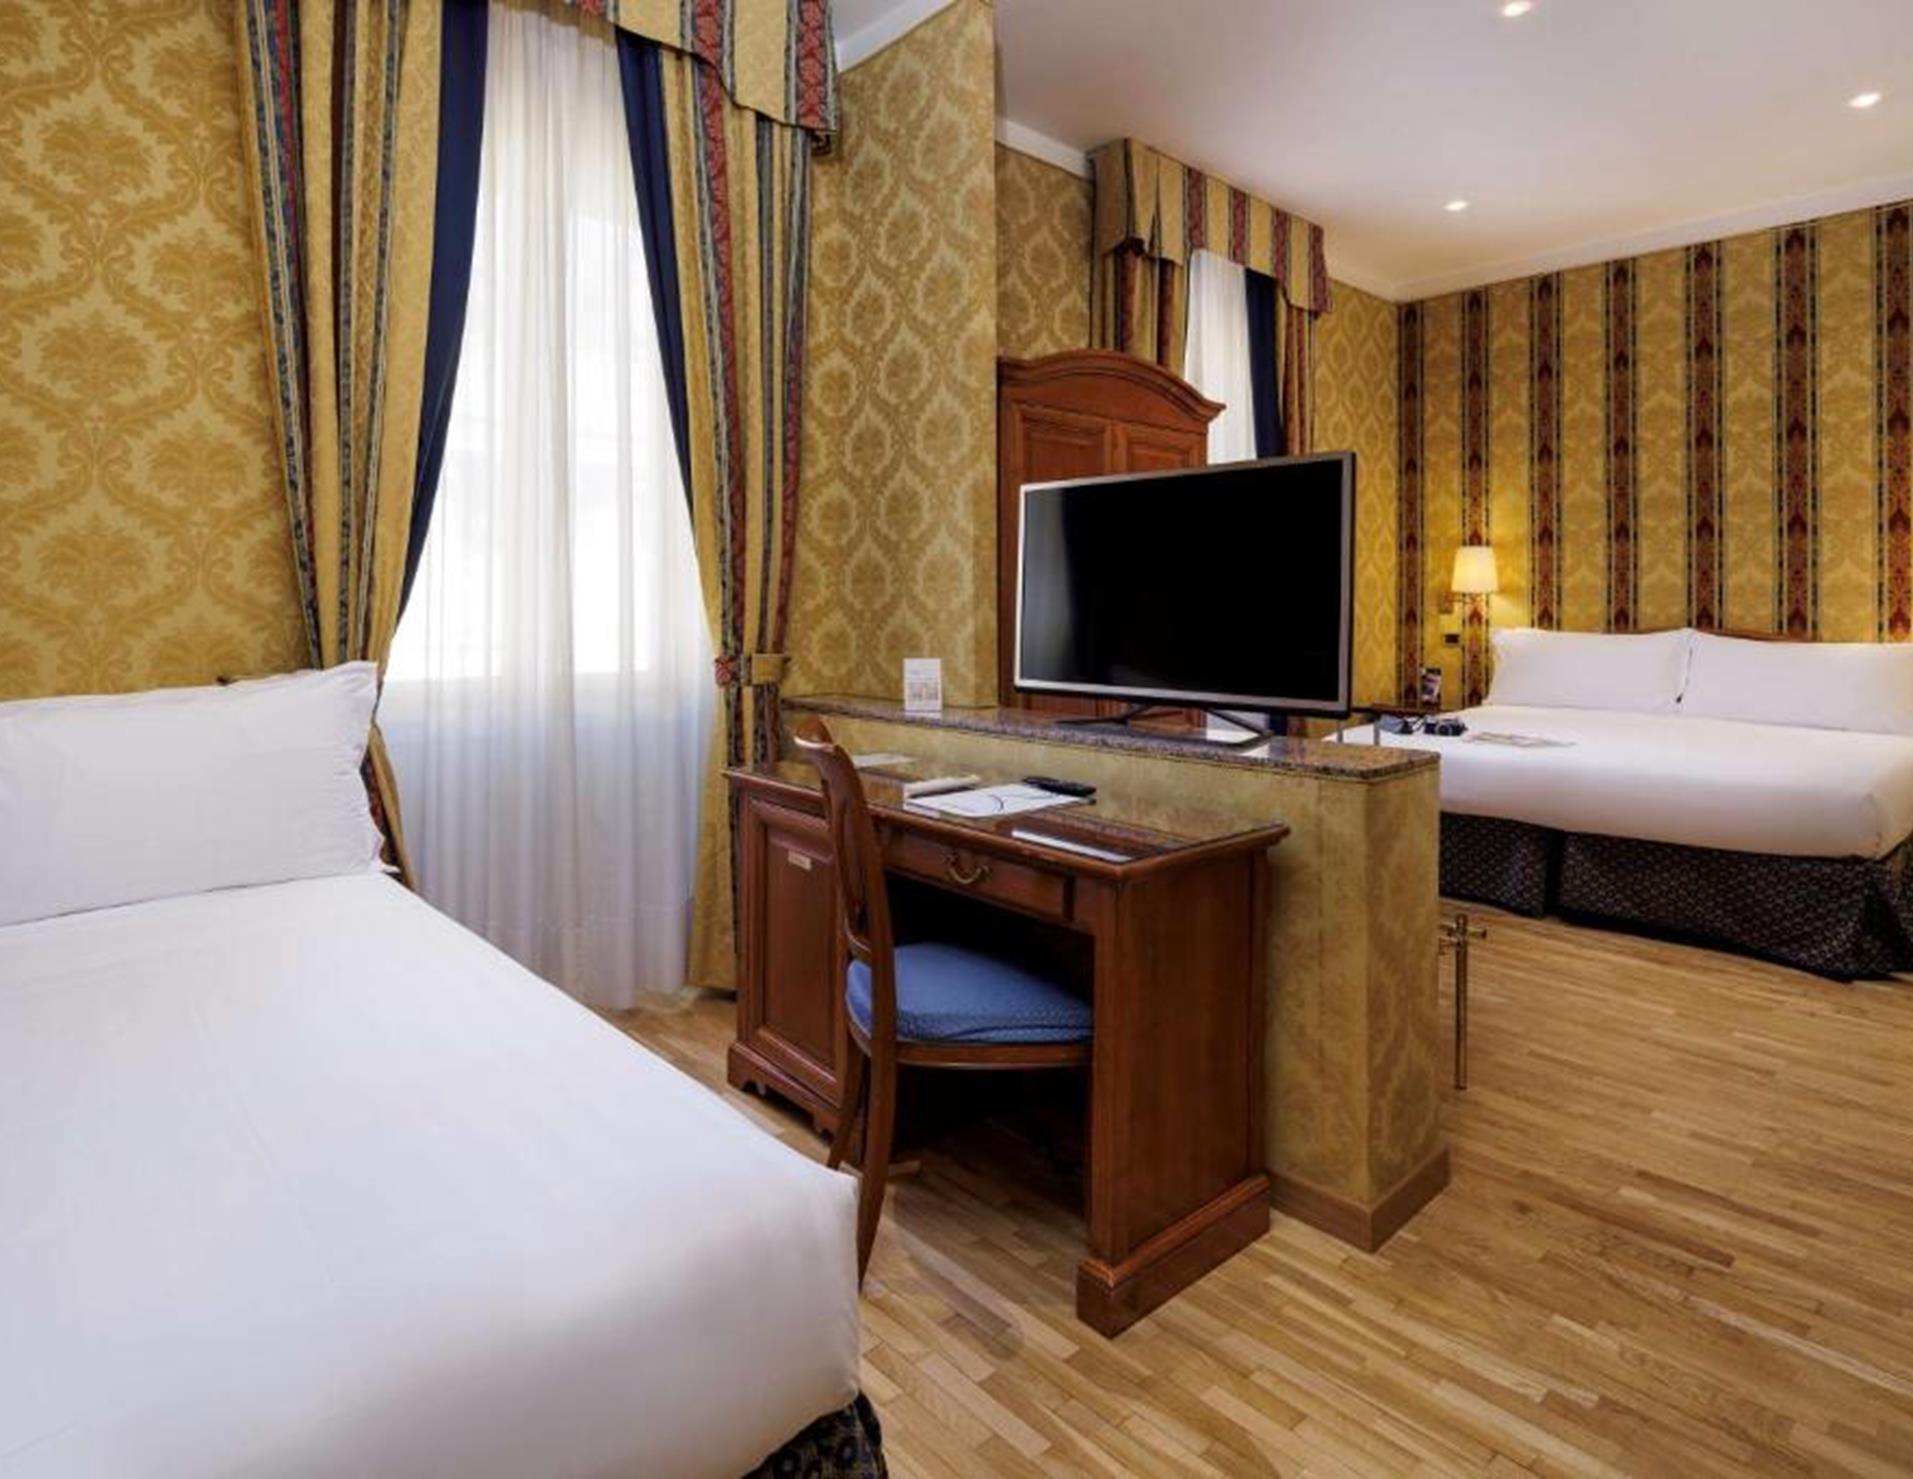 Hotel Raffaello - Room 4